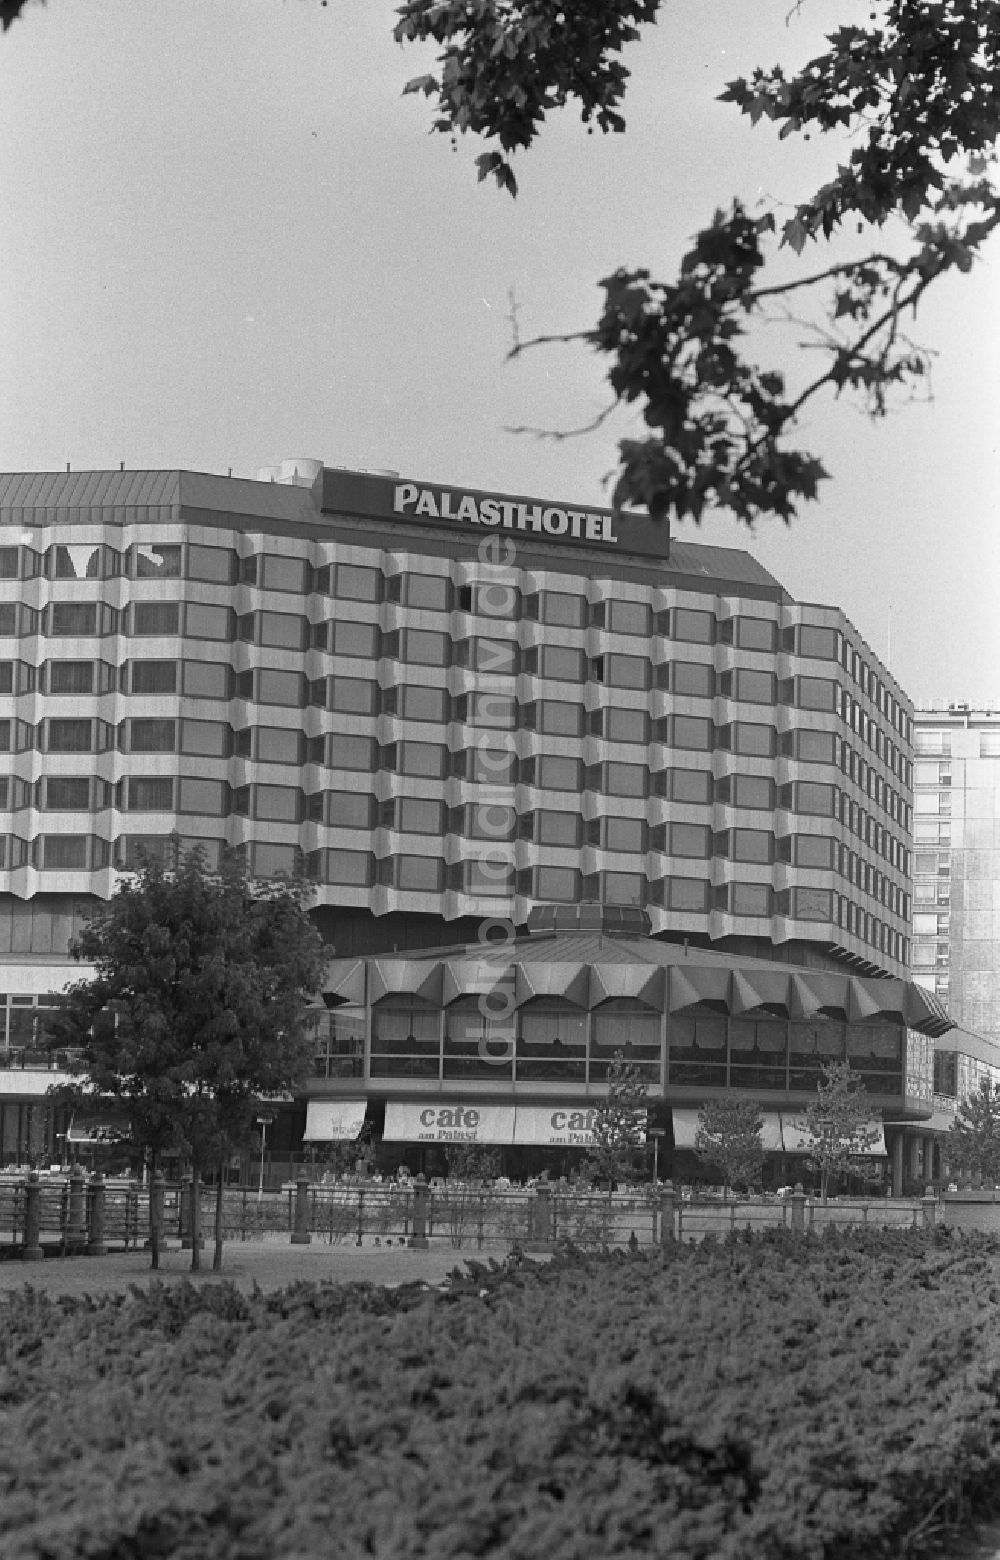 DDR-Fotoarchiv: Berlin - Hotelgebäude Palasthotel in Berlin auf dem Gebiet der ehemaligen DDR, Deutsche Demokratische Republik